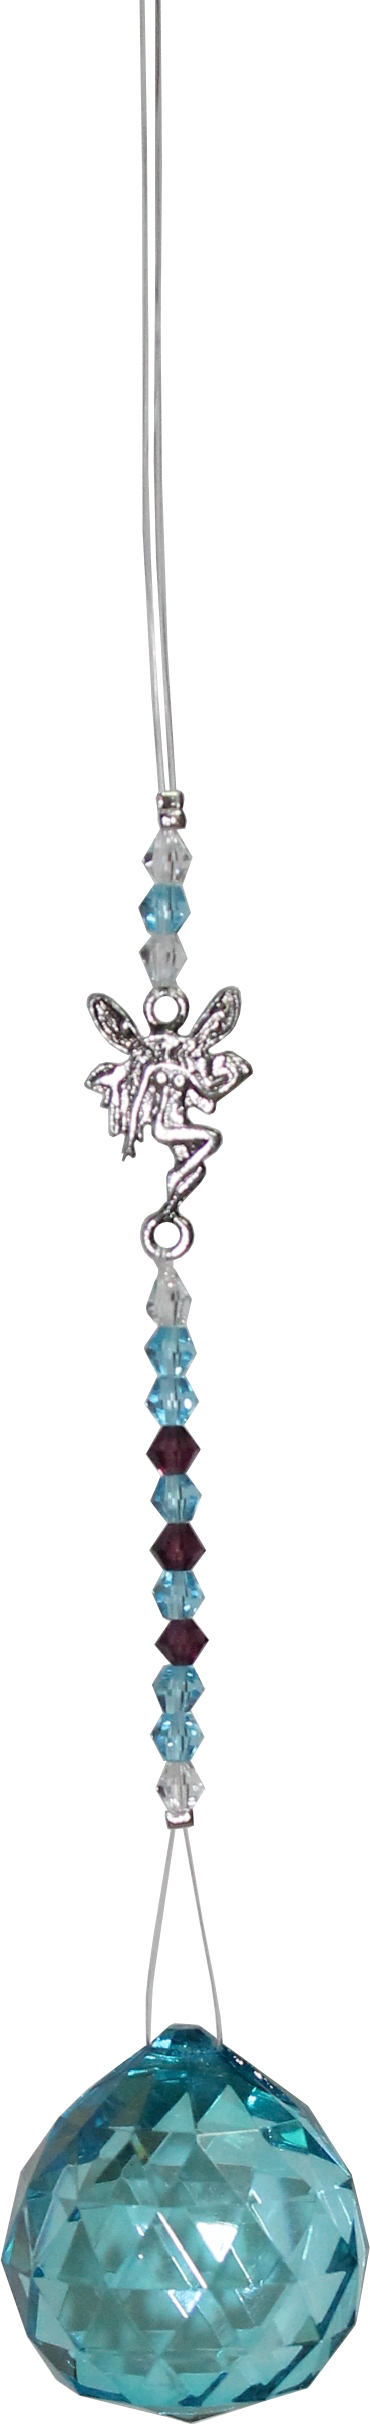 H-ngendes Kristallglas mit Perlen und Fee - (t-rkis)